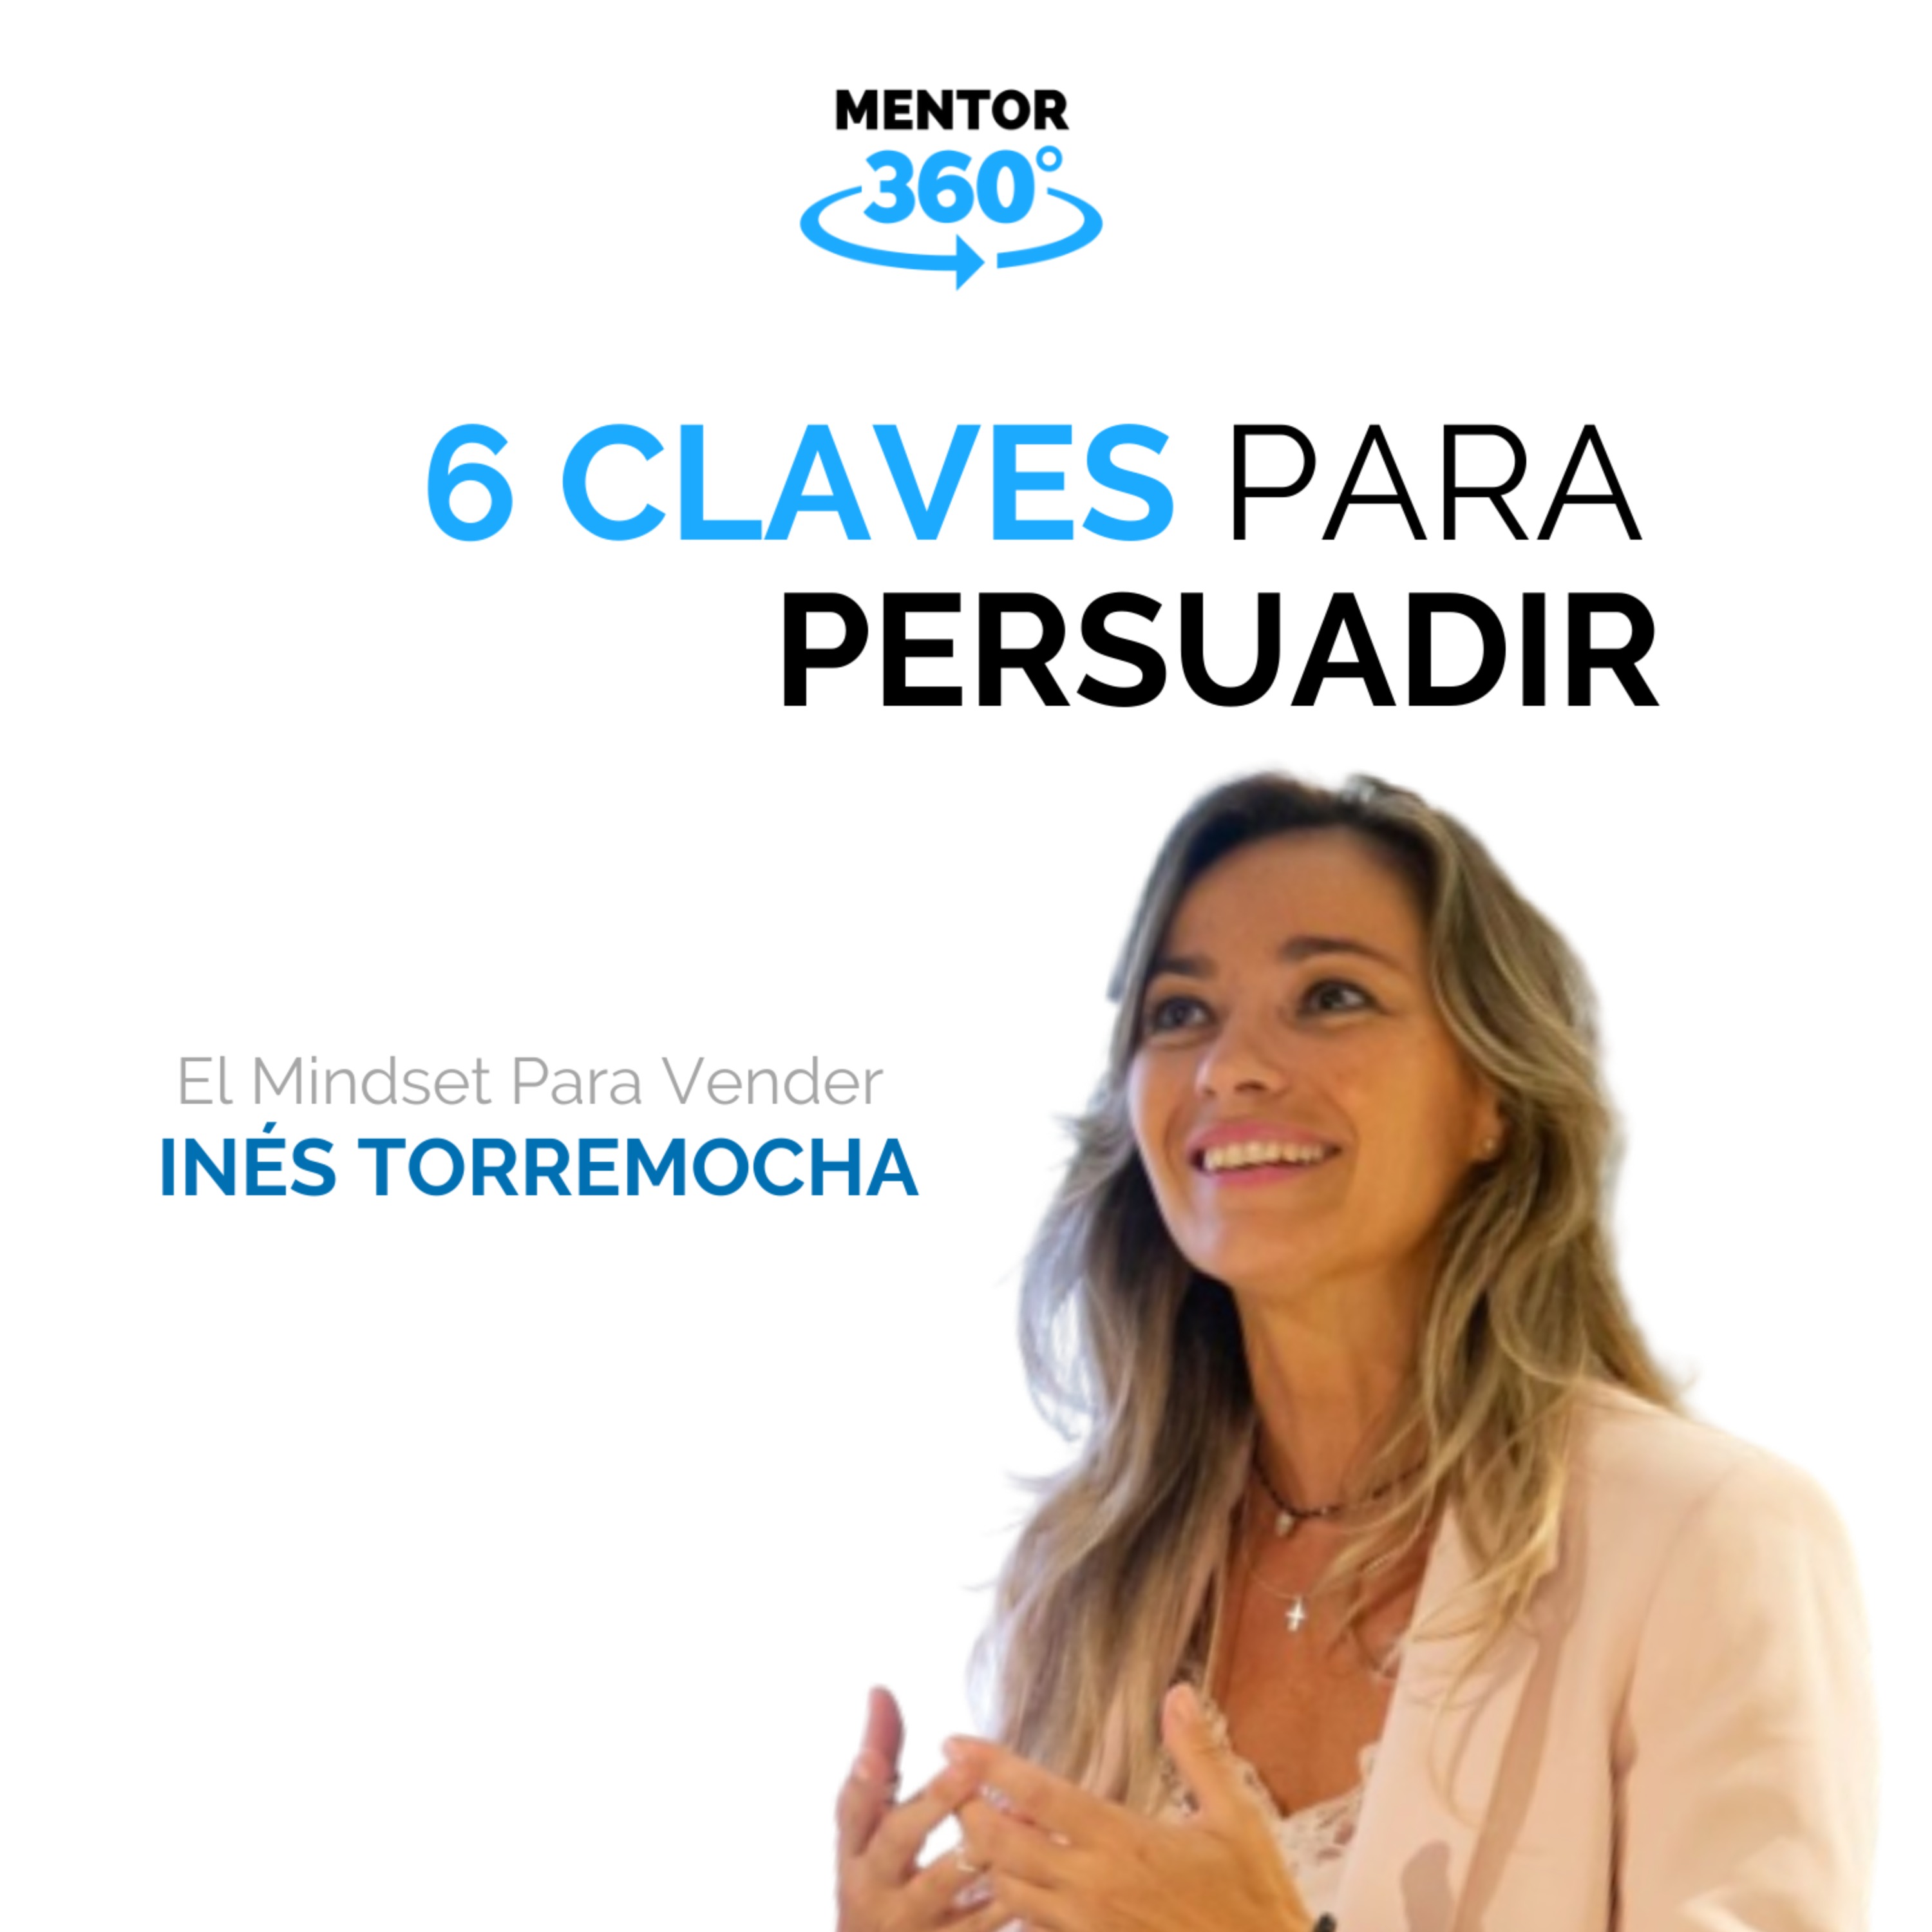 6 Claves Para Persuadir - El Mindset Para Vender - Inés Torremocha - MENTOR360